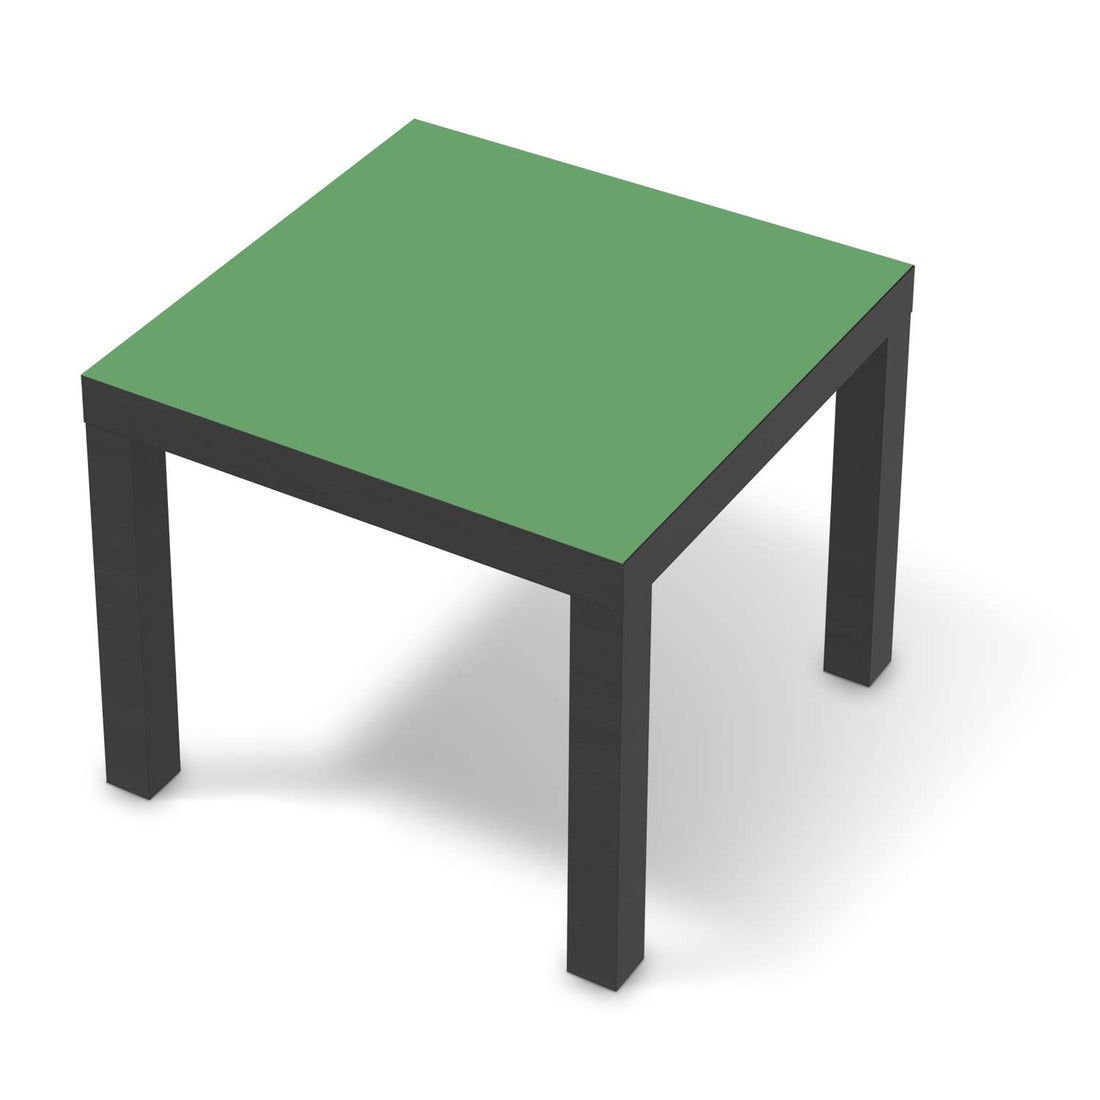 Möbelfolie Grün Light - IKEA Lack Tisch 55x55 cm - schwarz